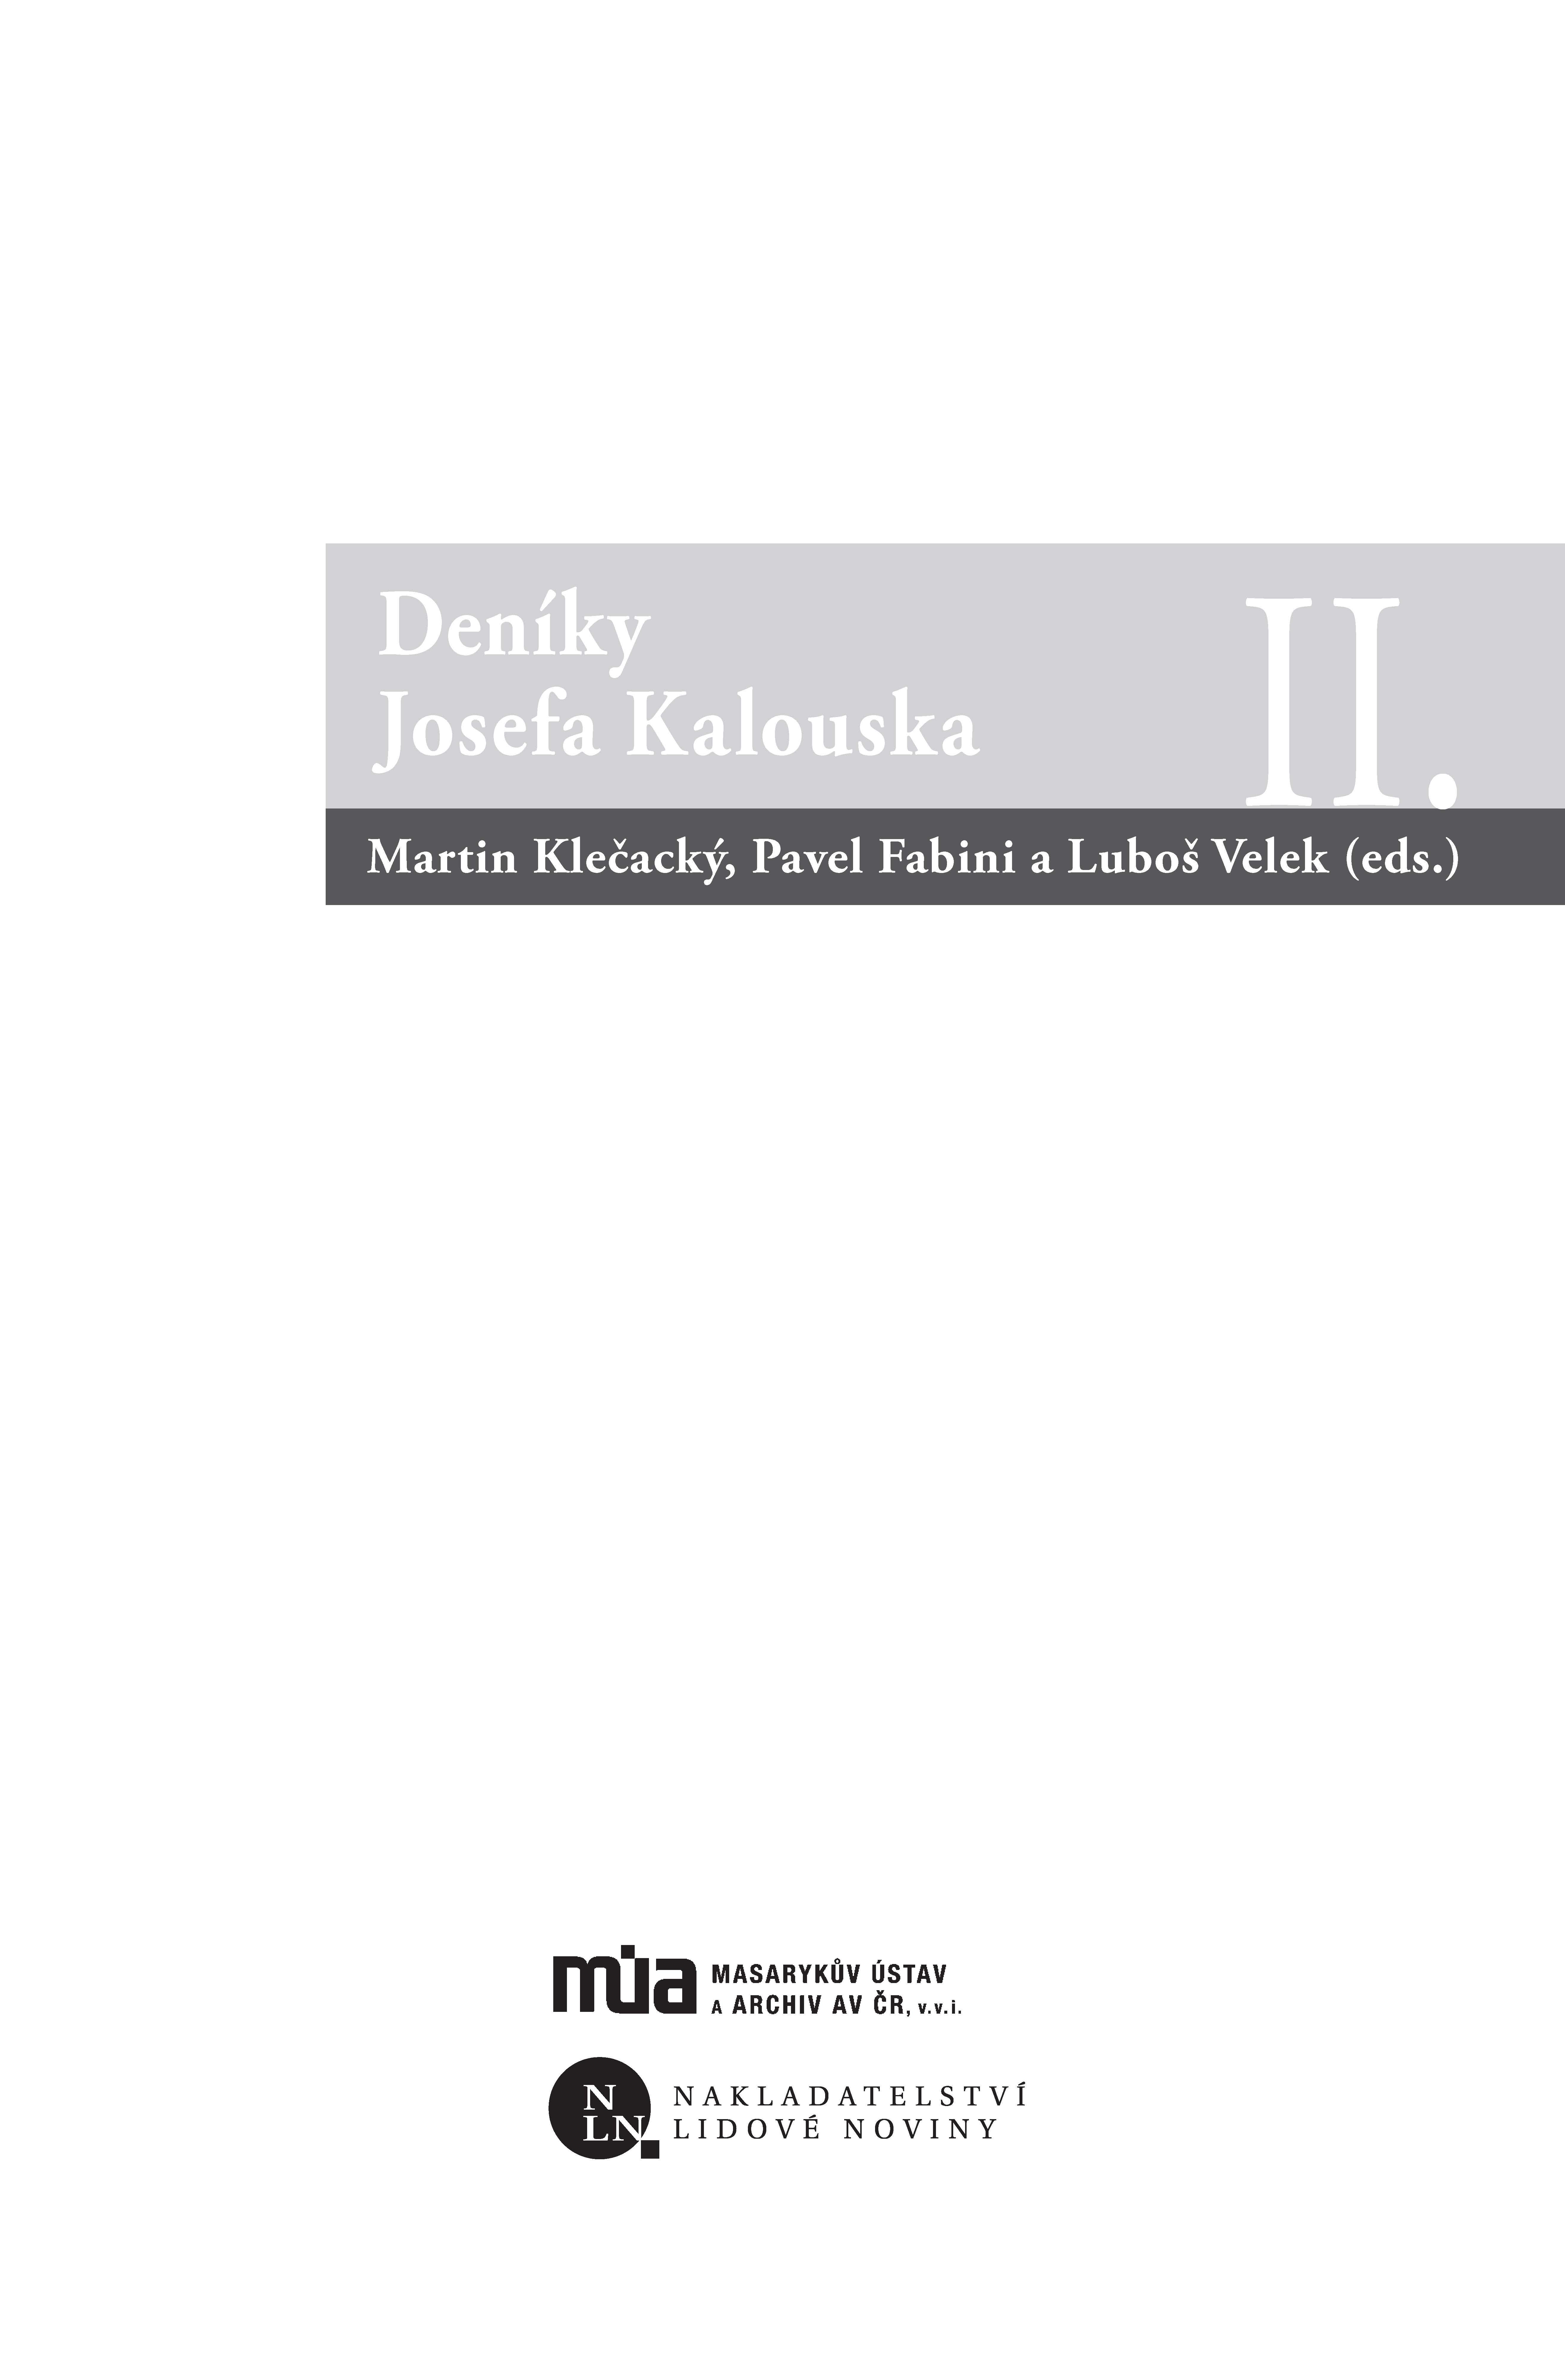 Deníky Josefa Kalouska II. ukázka-1